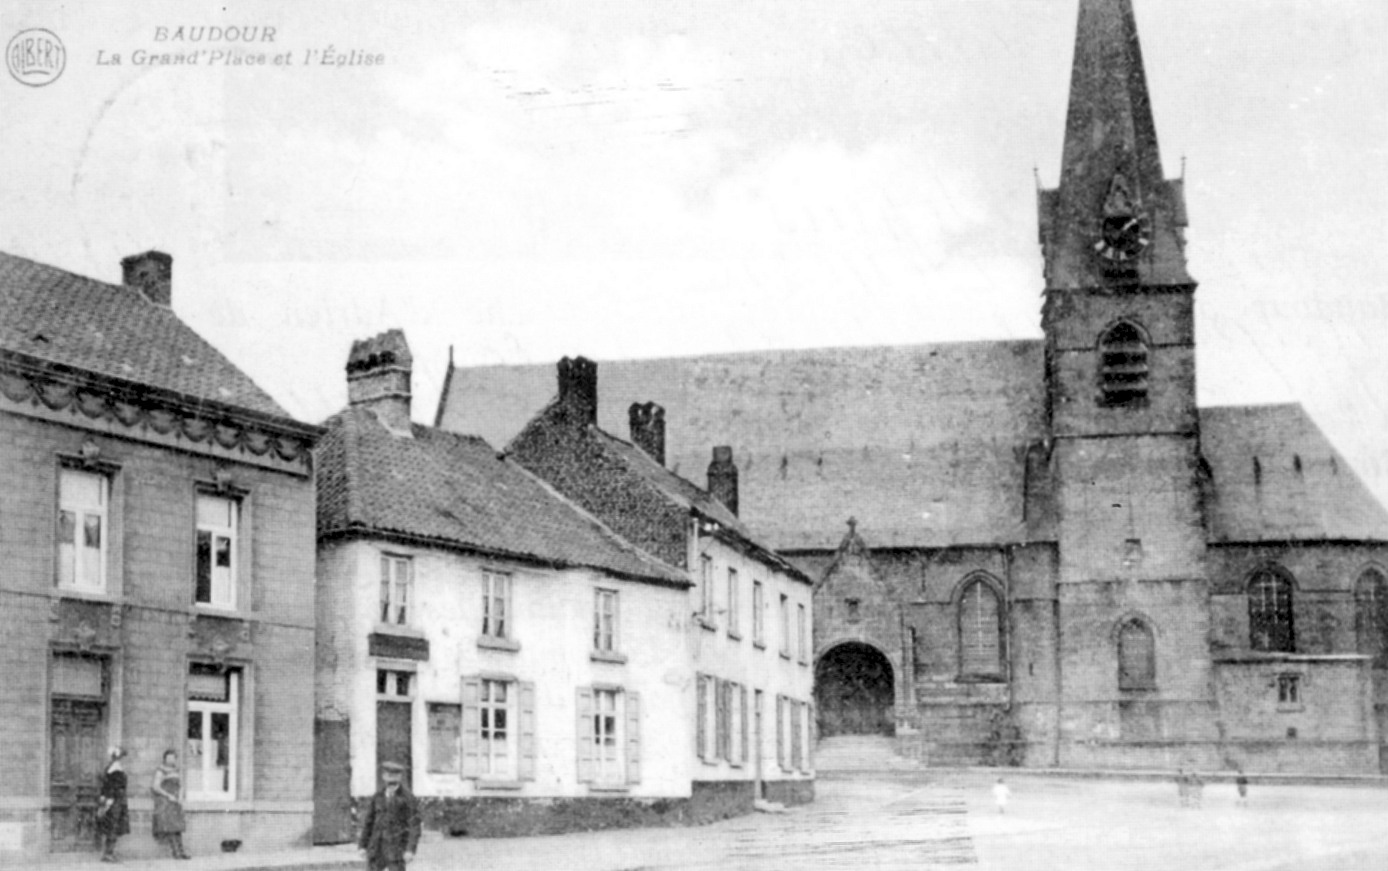 Baudour : La Grand'Place et l'Eglise.